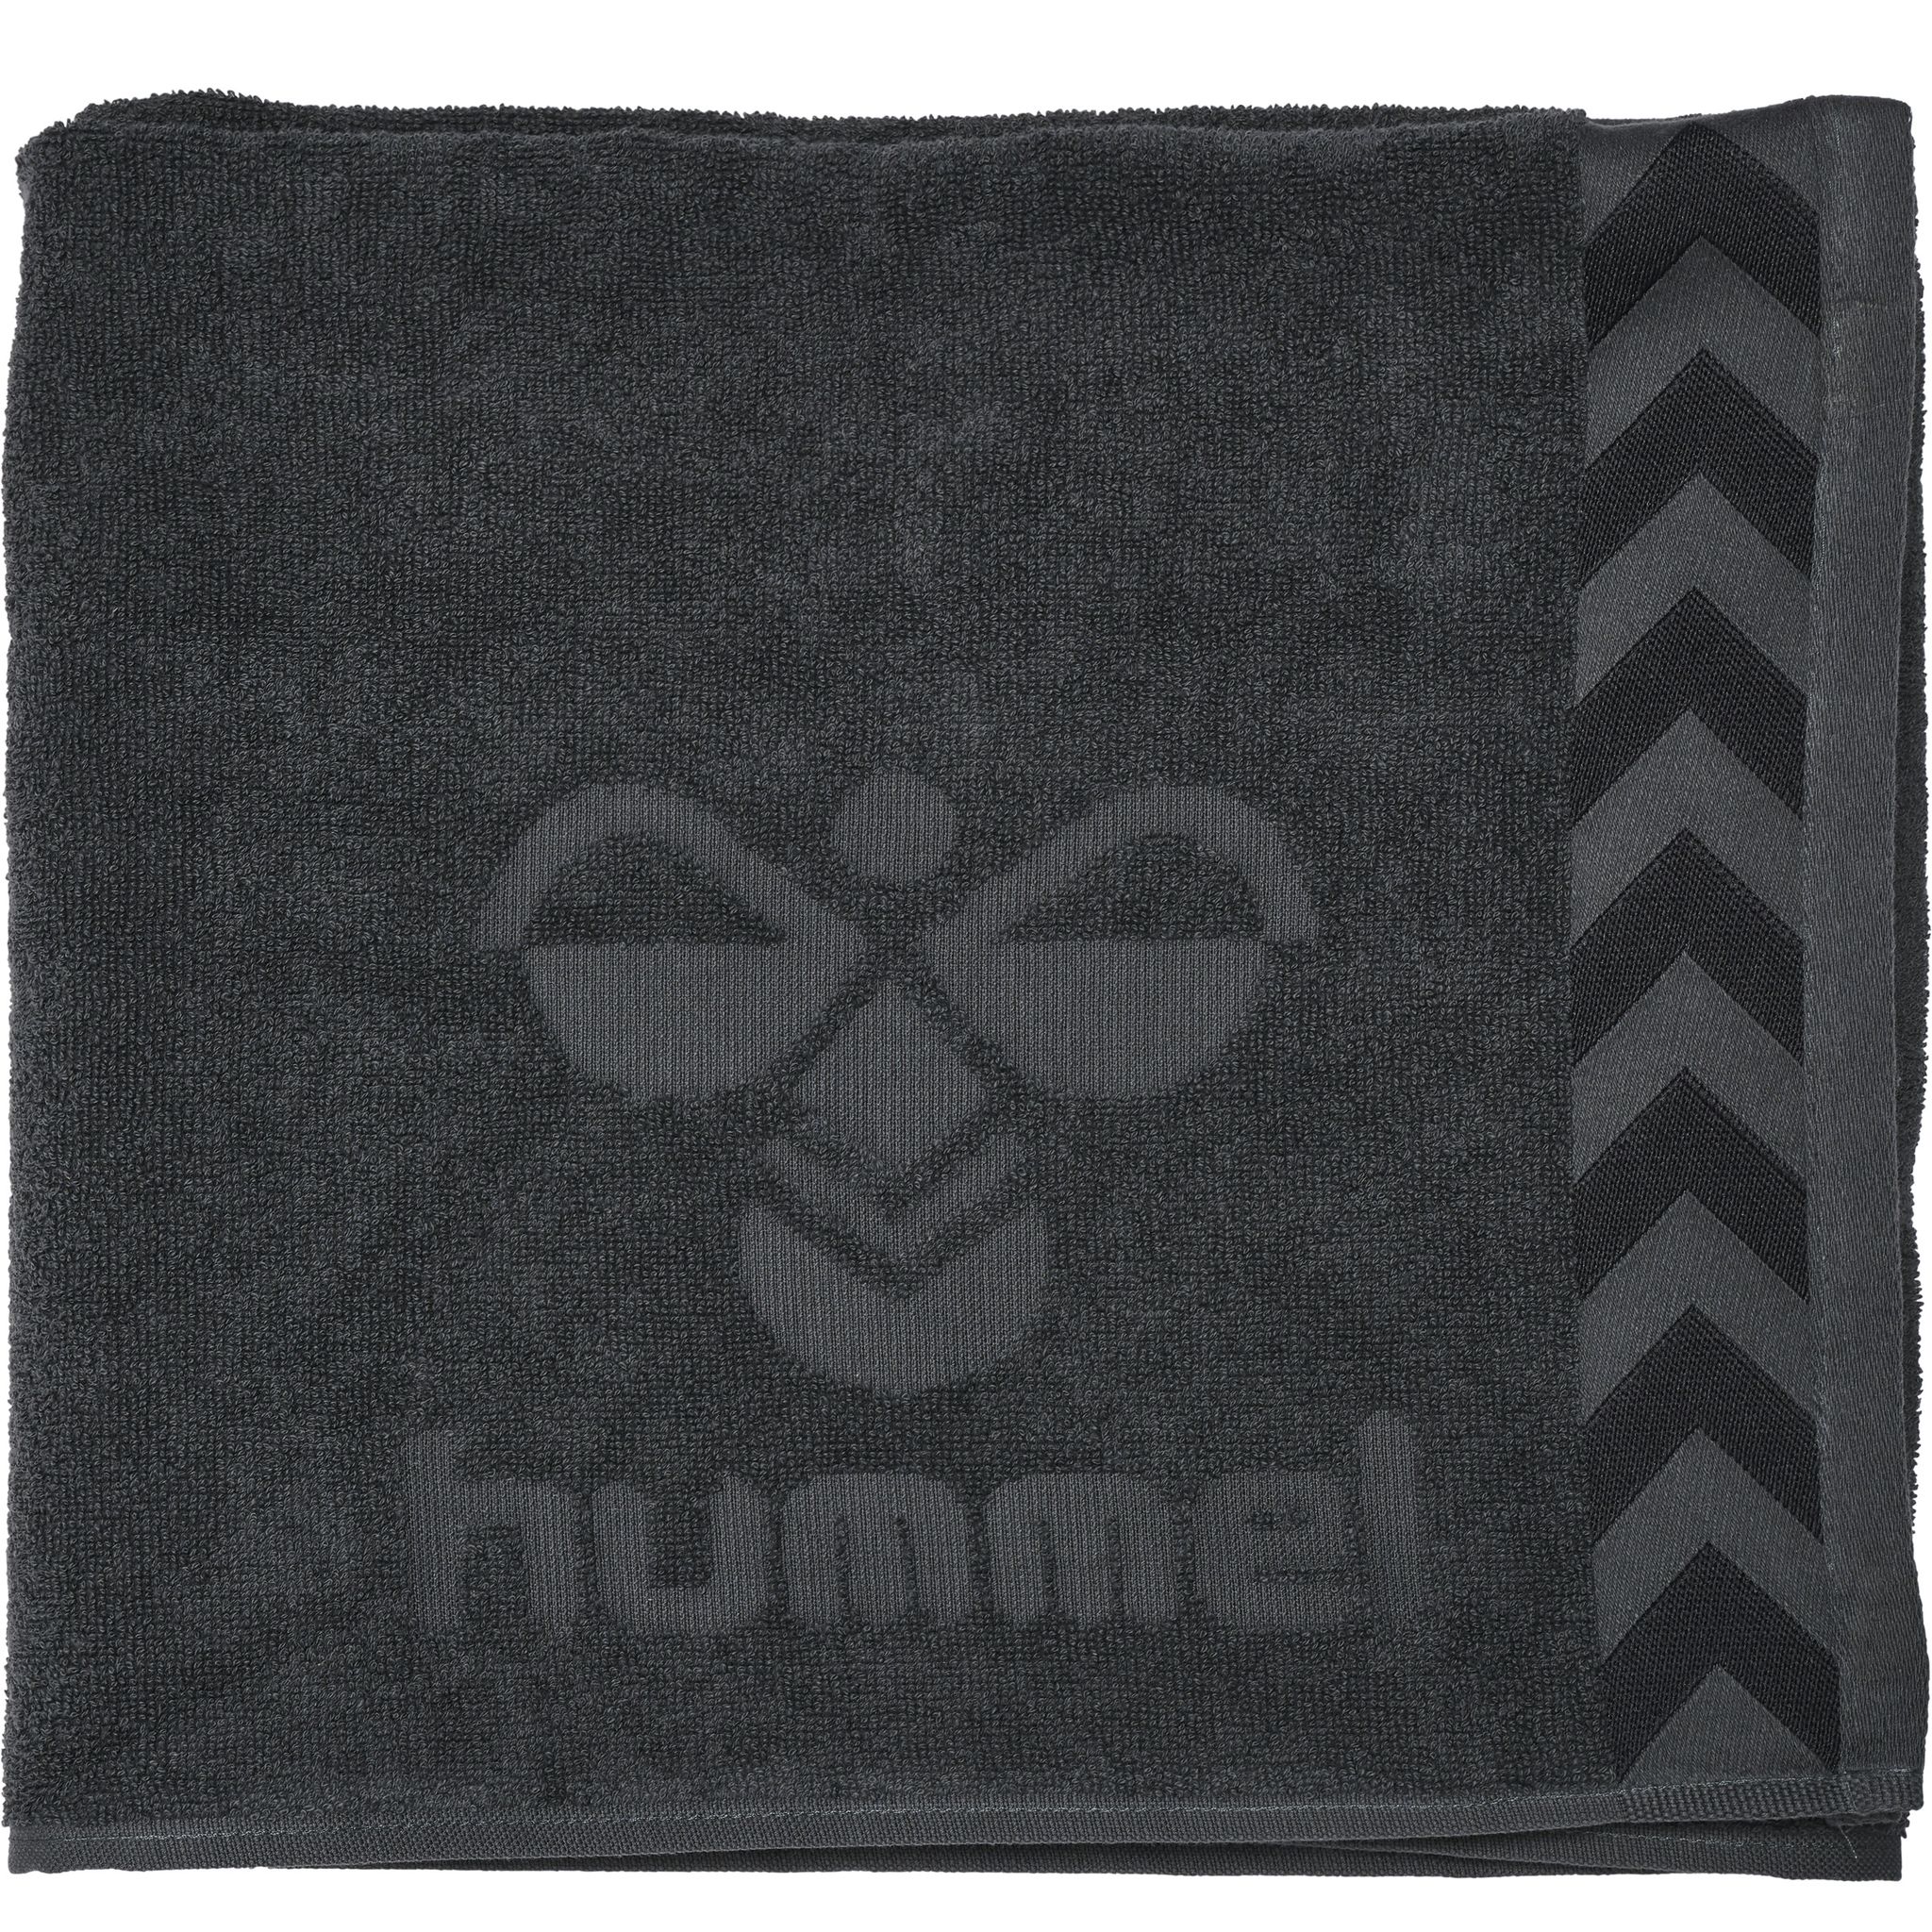 HUMMEL LARGE TOWEL